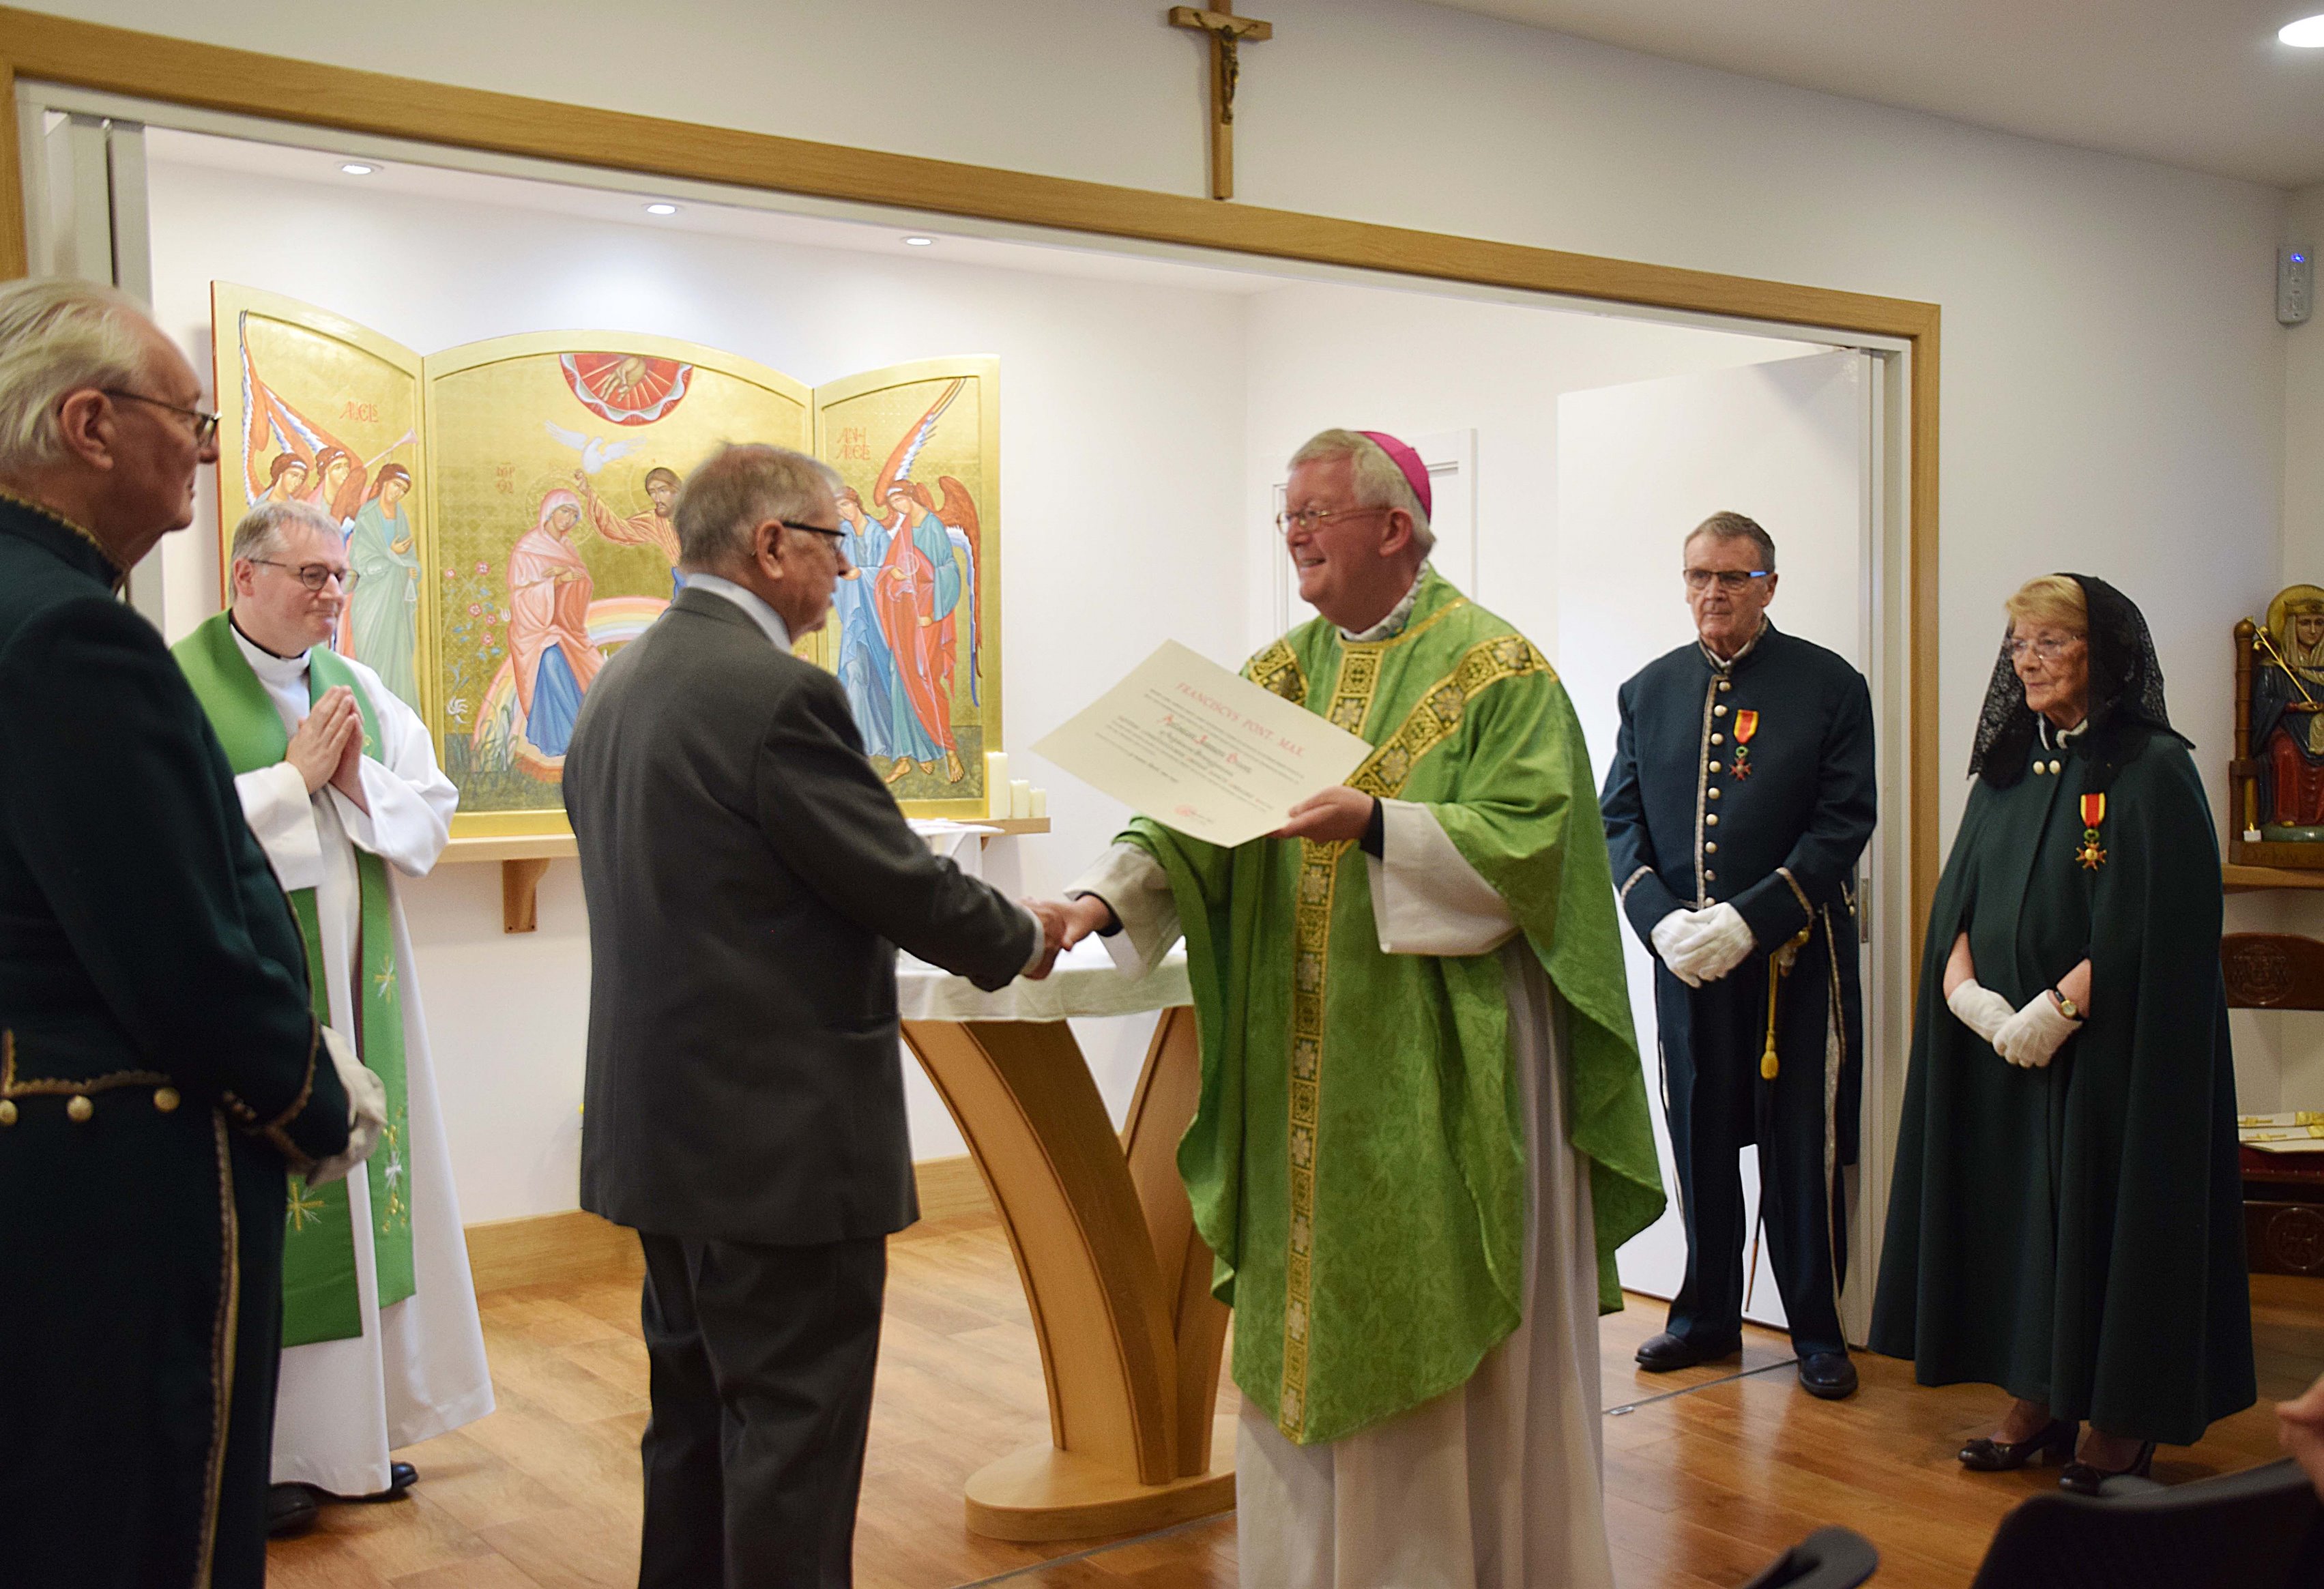 Tony receives a Papal award